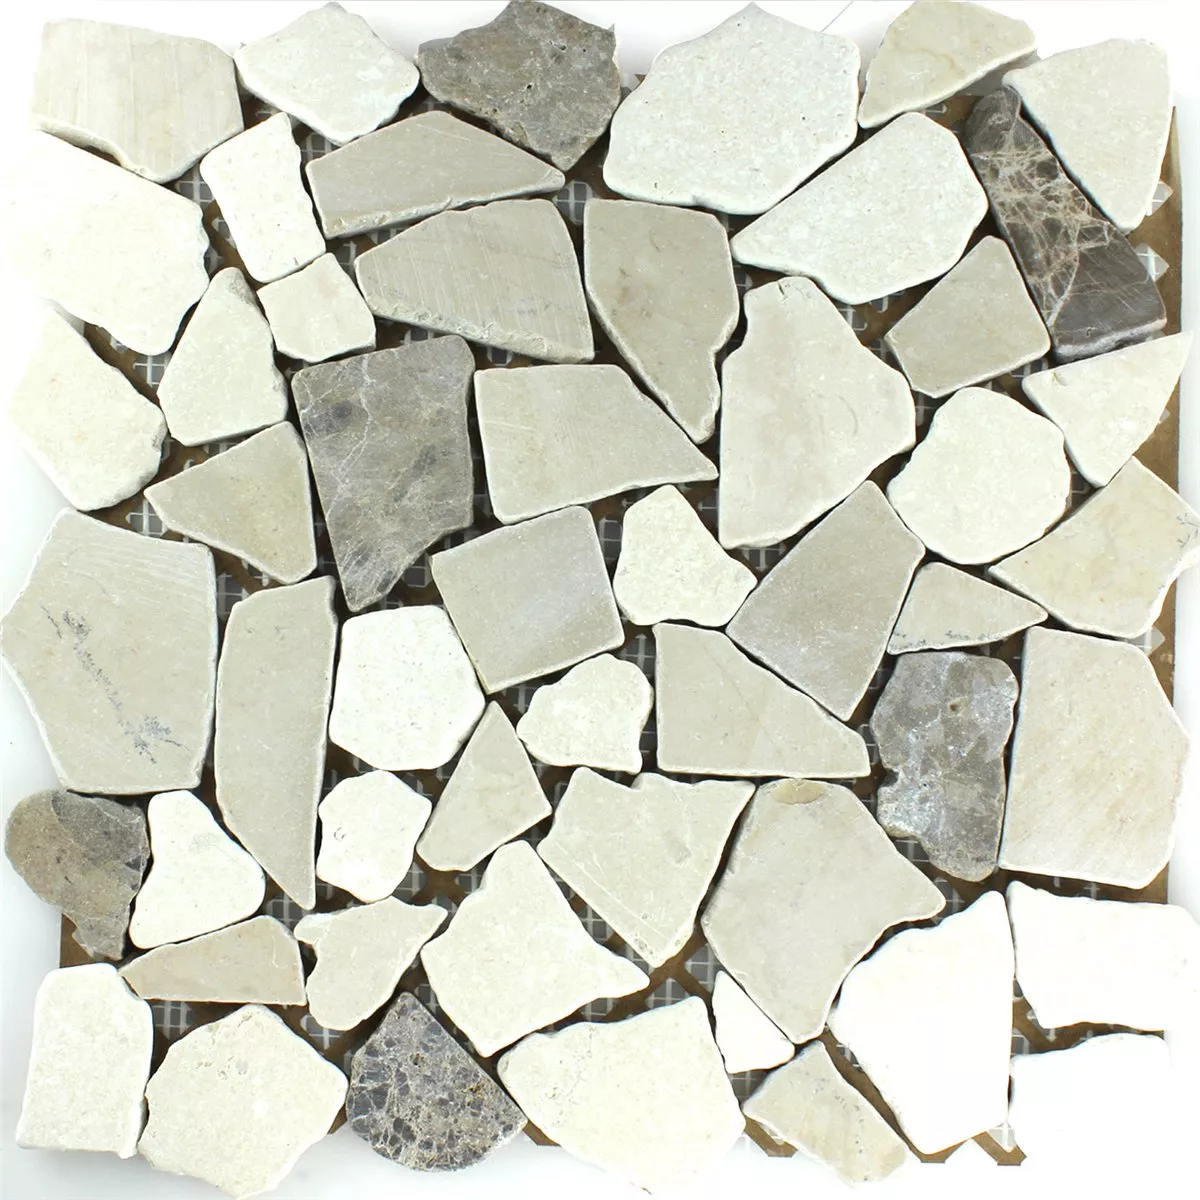 Sample Mosaic Tiles Broken Marble Coffee Beige